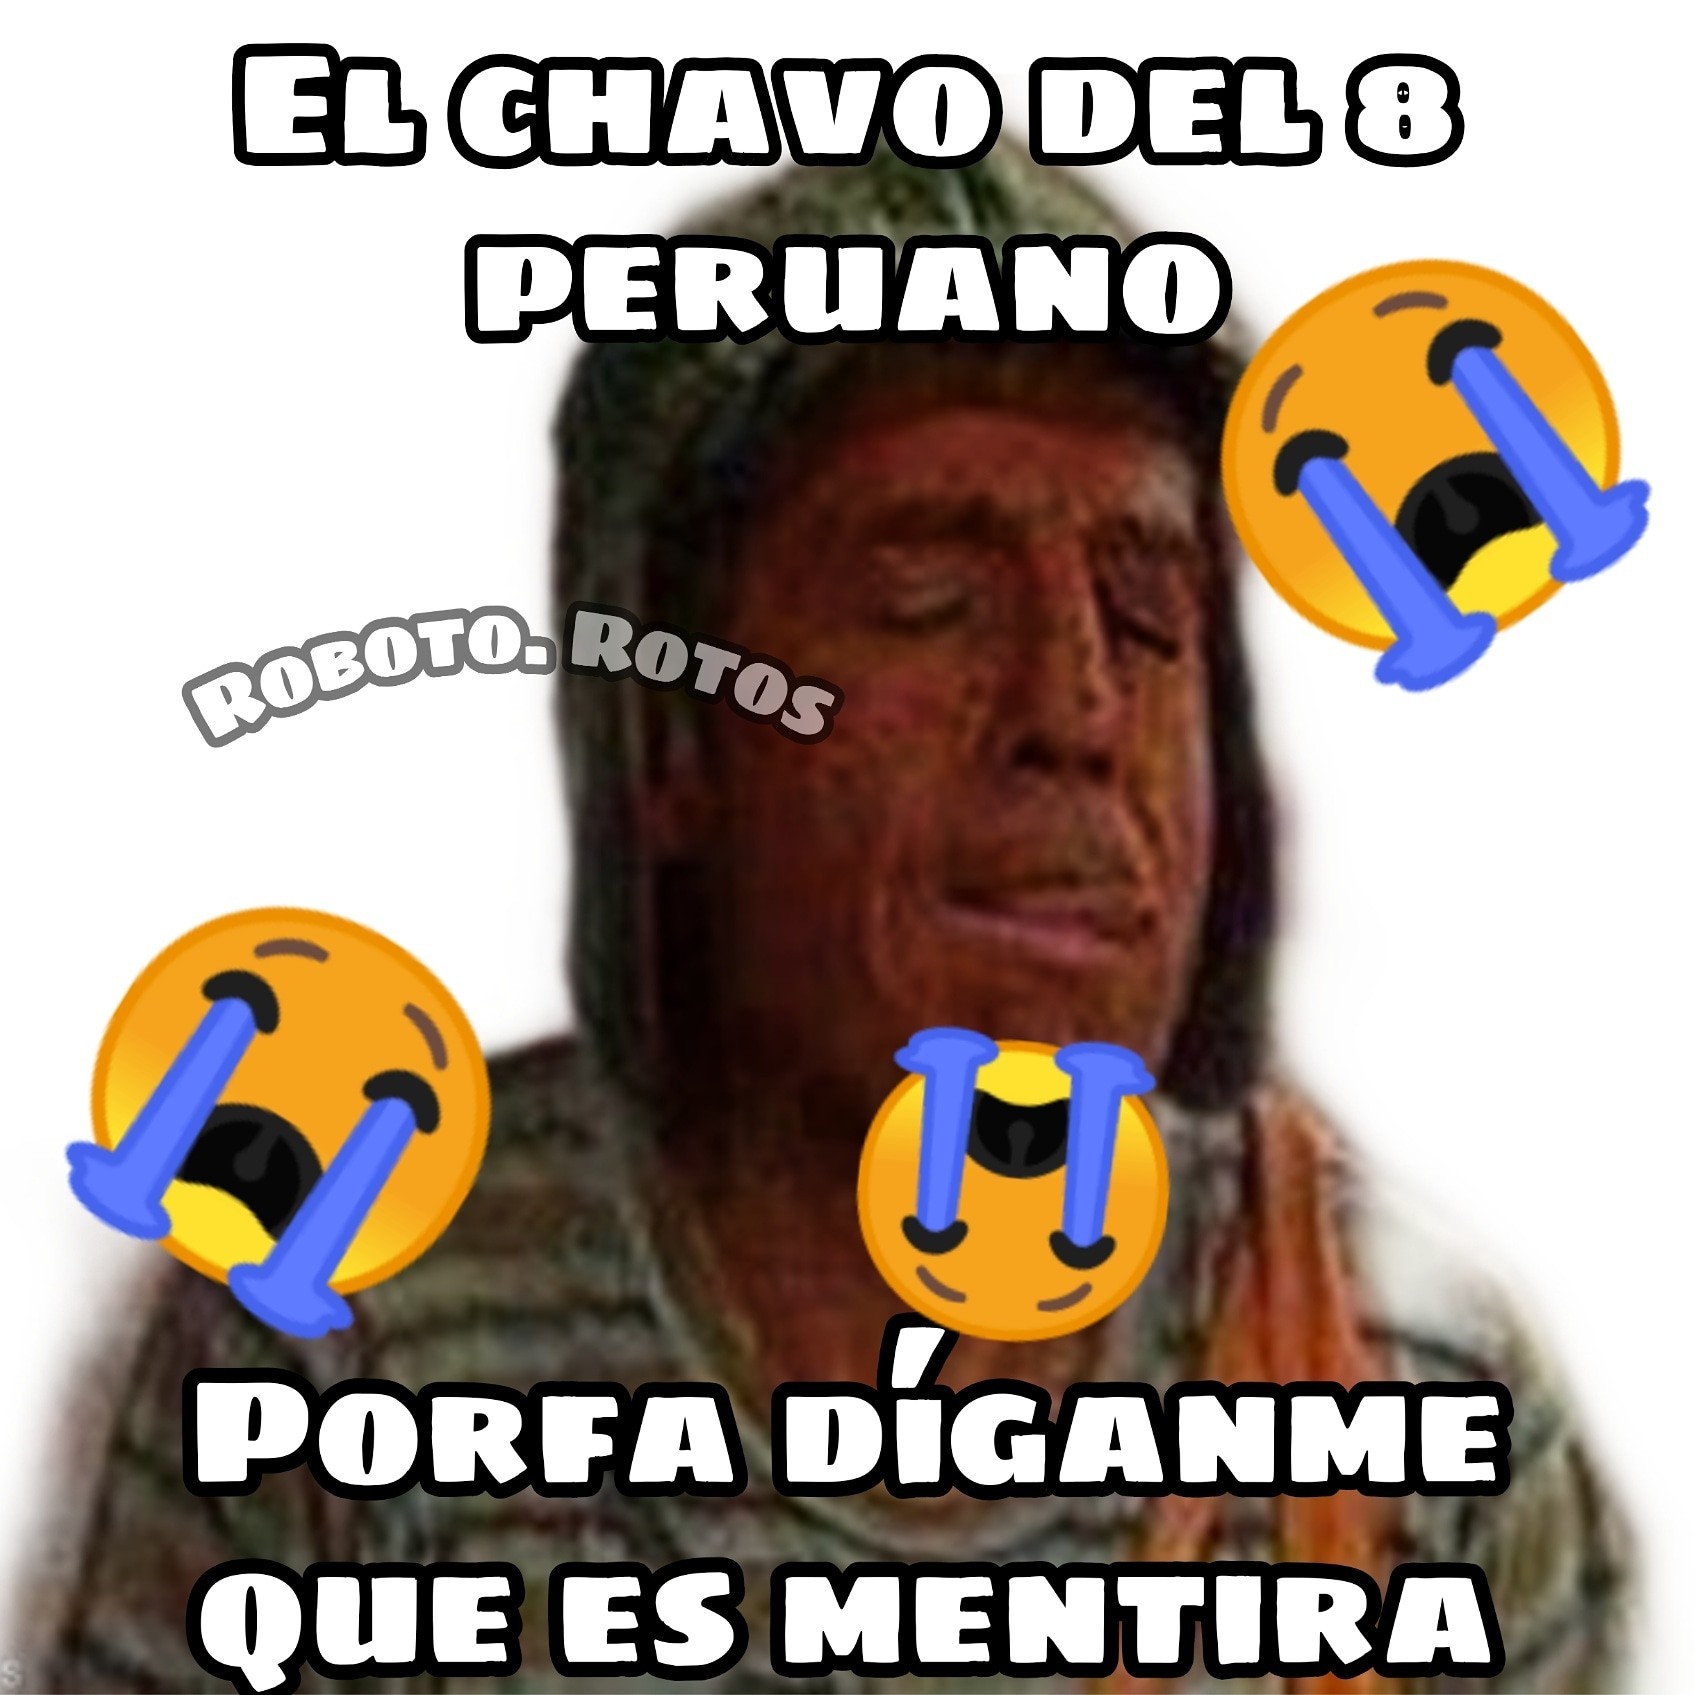 Chavo del 8 peruano  - meme